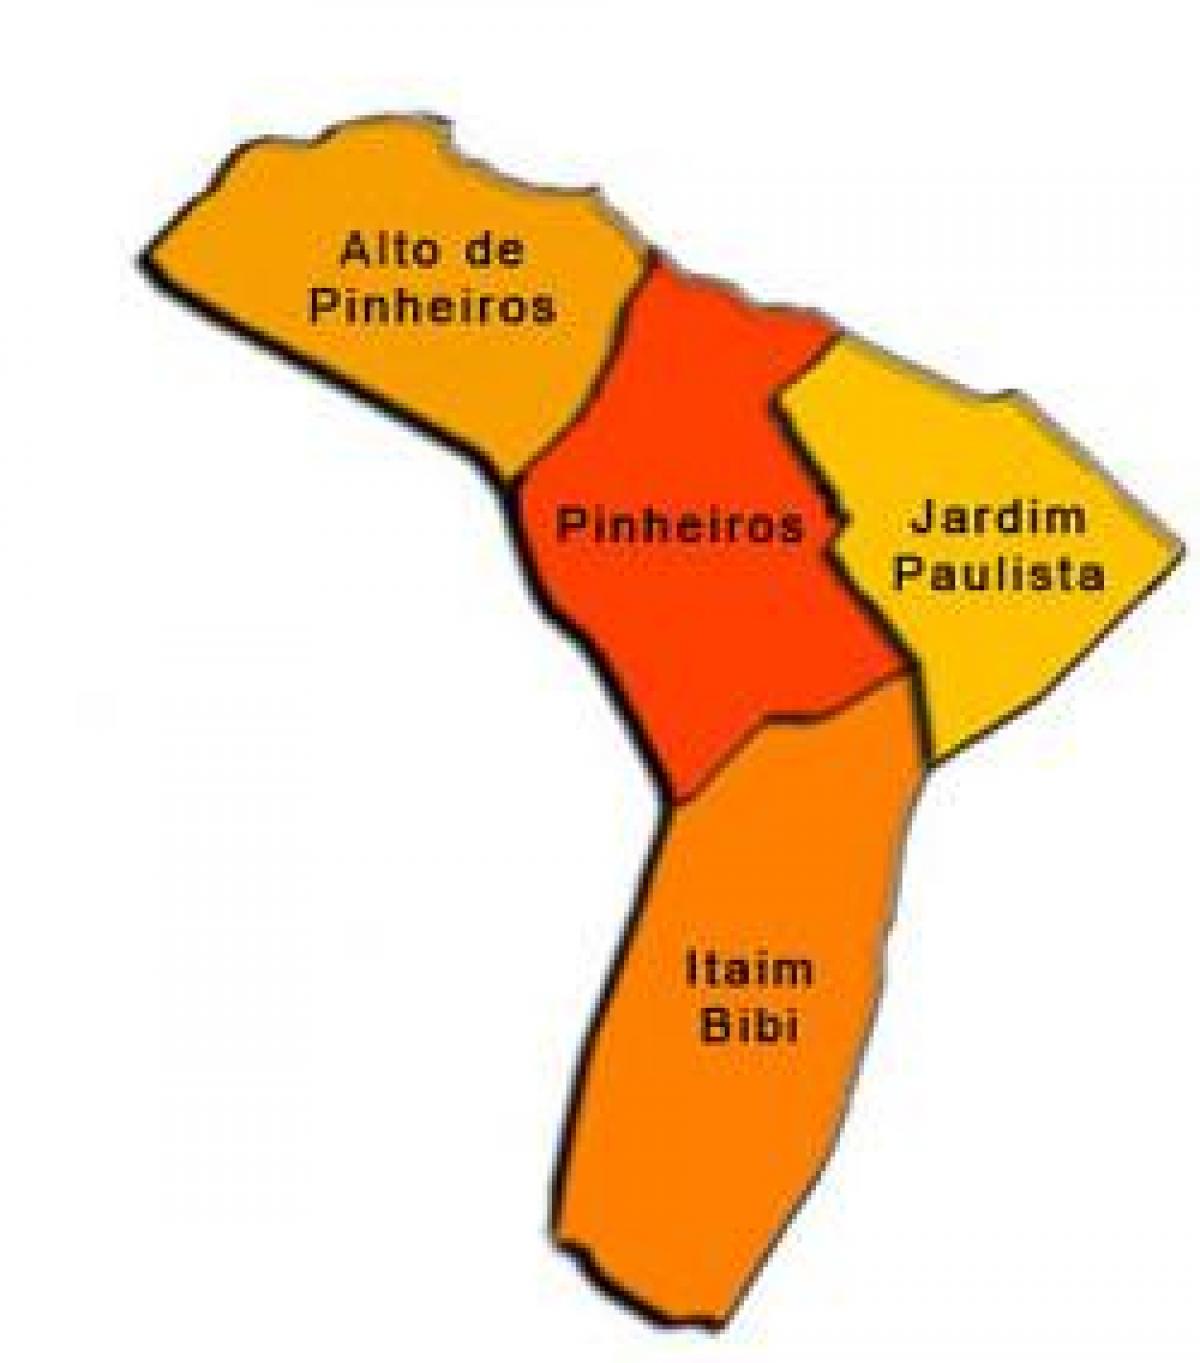 মানচিত্র Pinheiros উপ-প্রিফেকচার